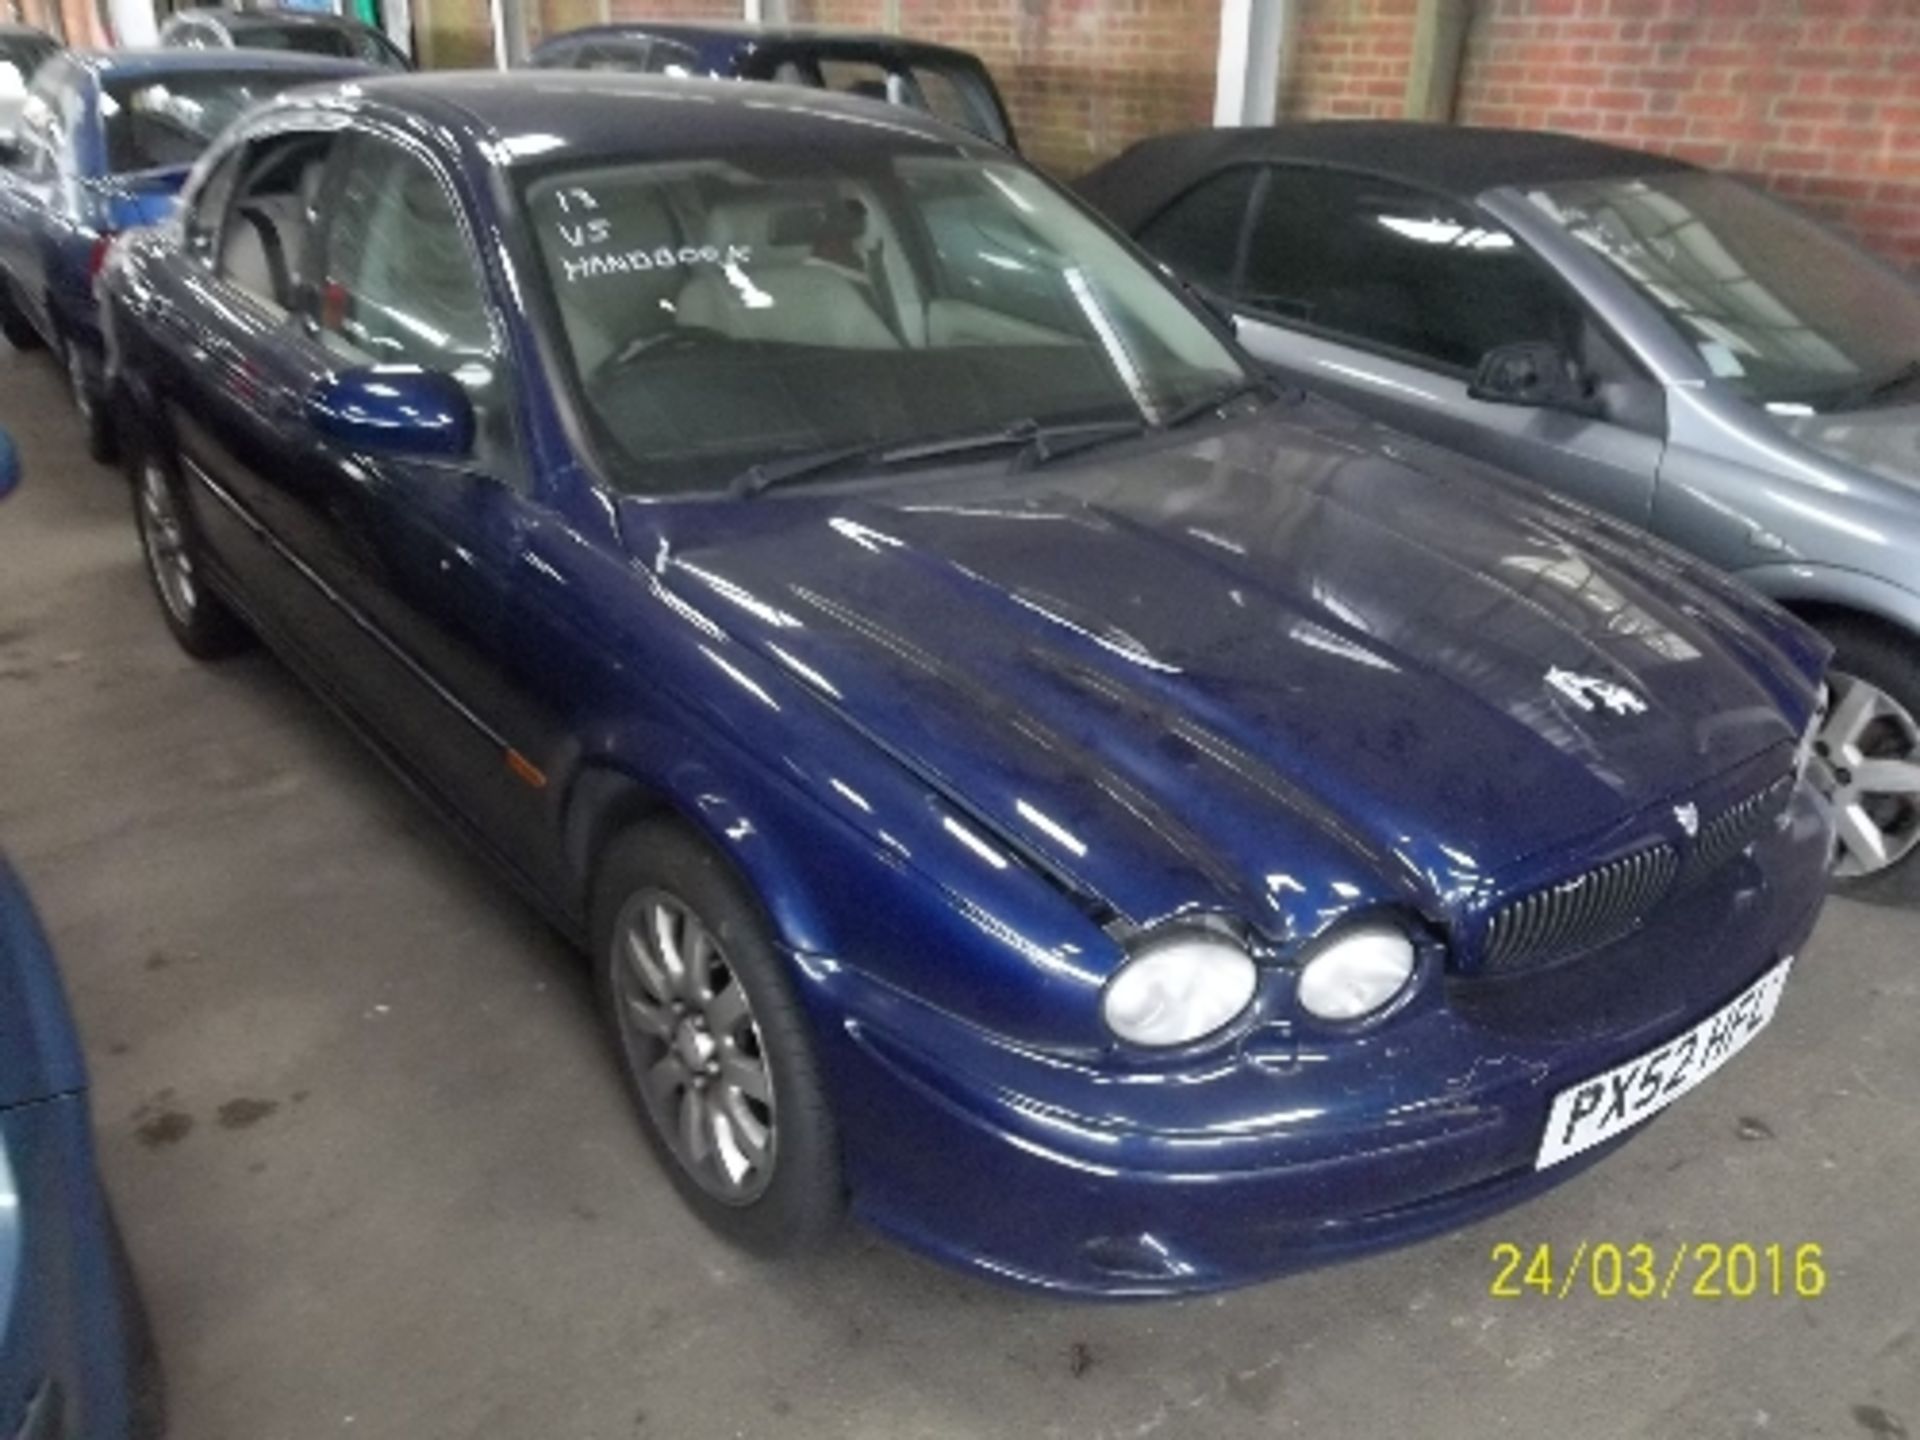 Jaguar X-Type V6 Sport - PX52 HFL Date of registration: 25.09.2002 2099cc, petrol, manual, blue - Image 2 of 4